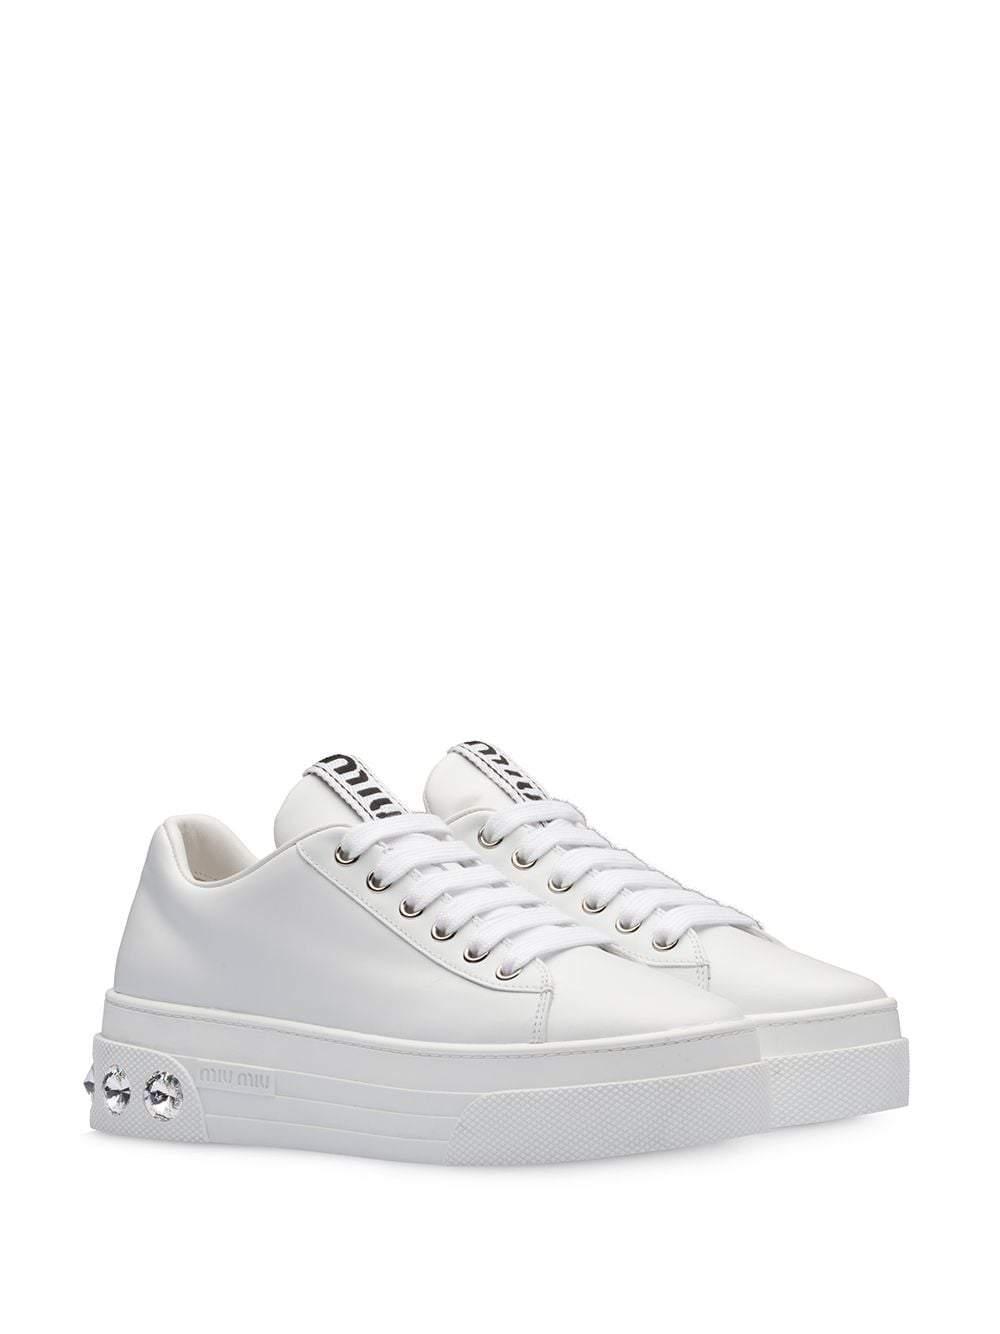 Miu Miu Sneakers White | Lyst Canada